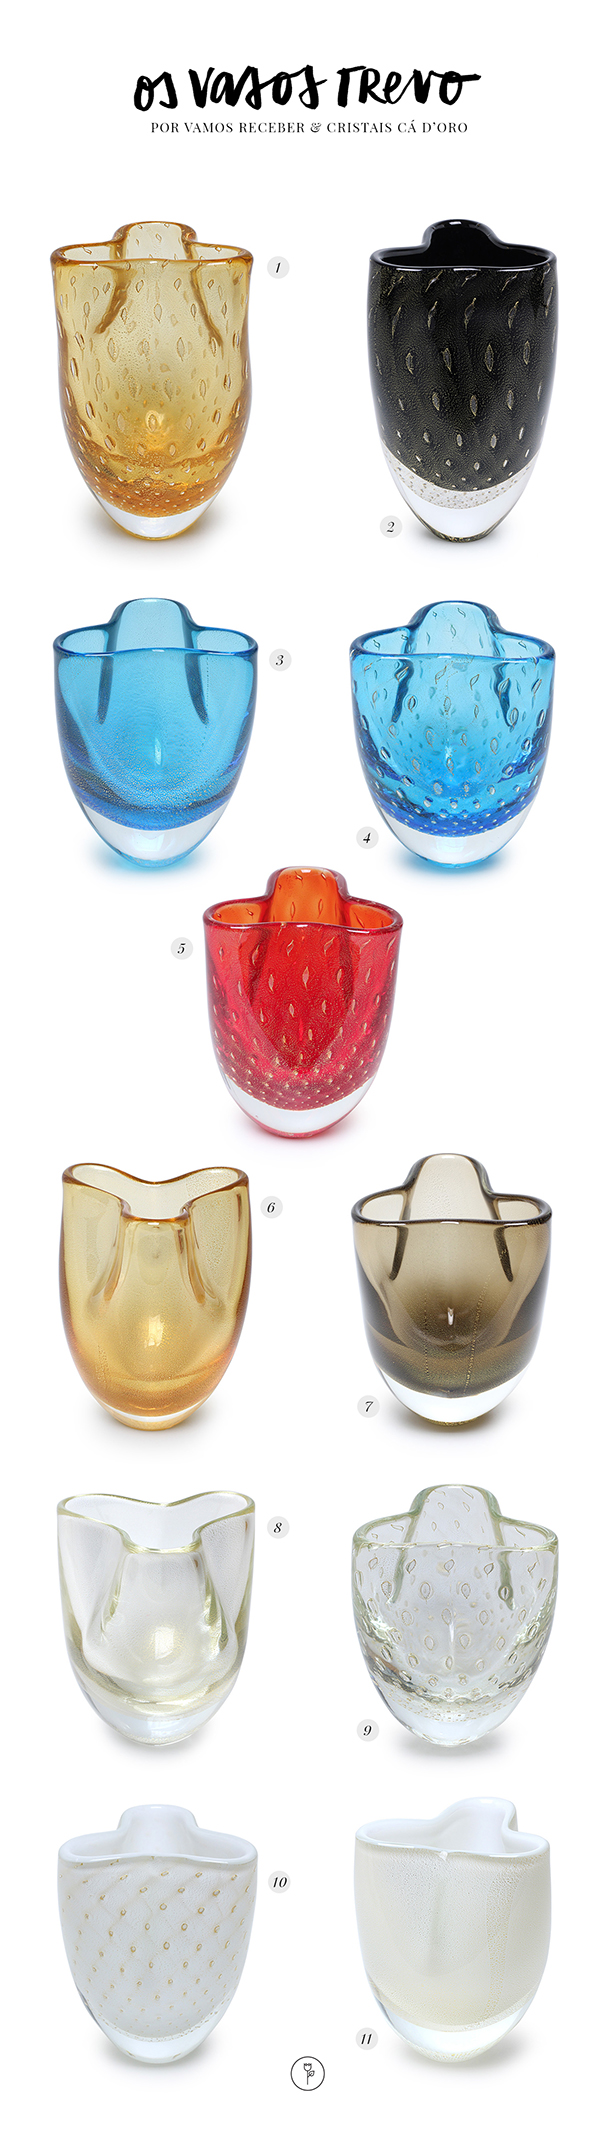 vasos de cristal trevo